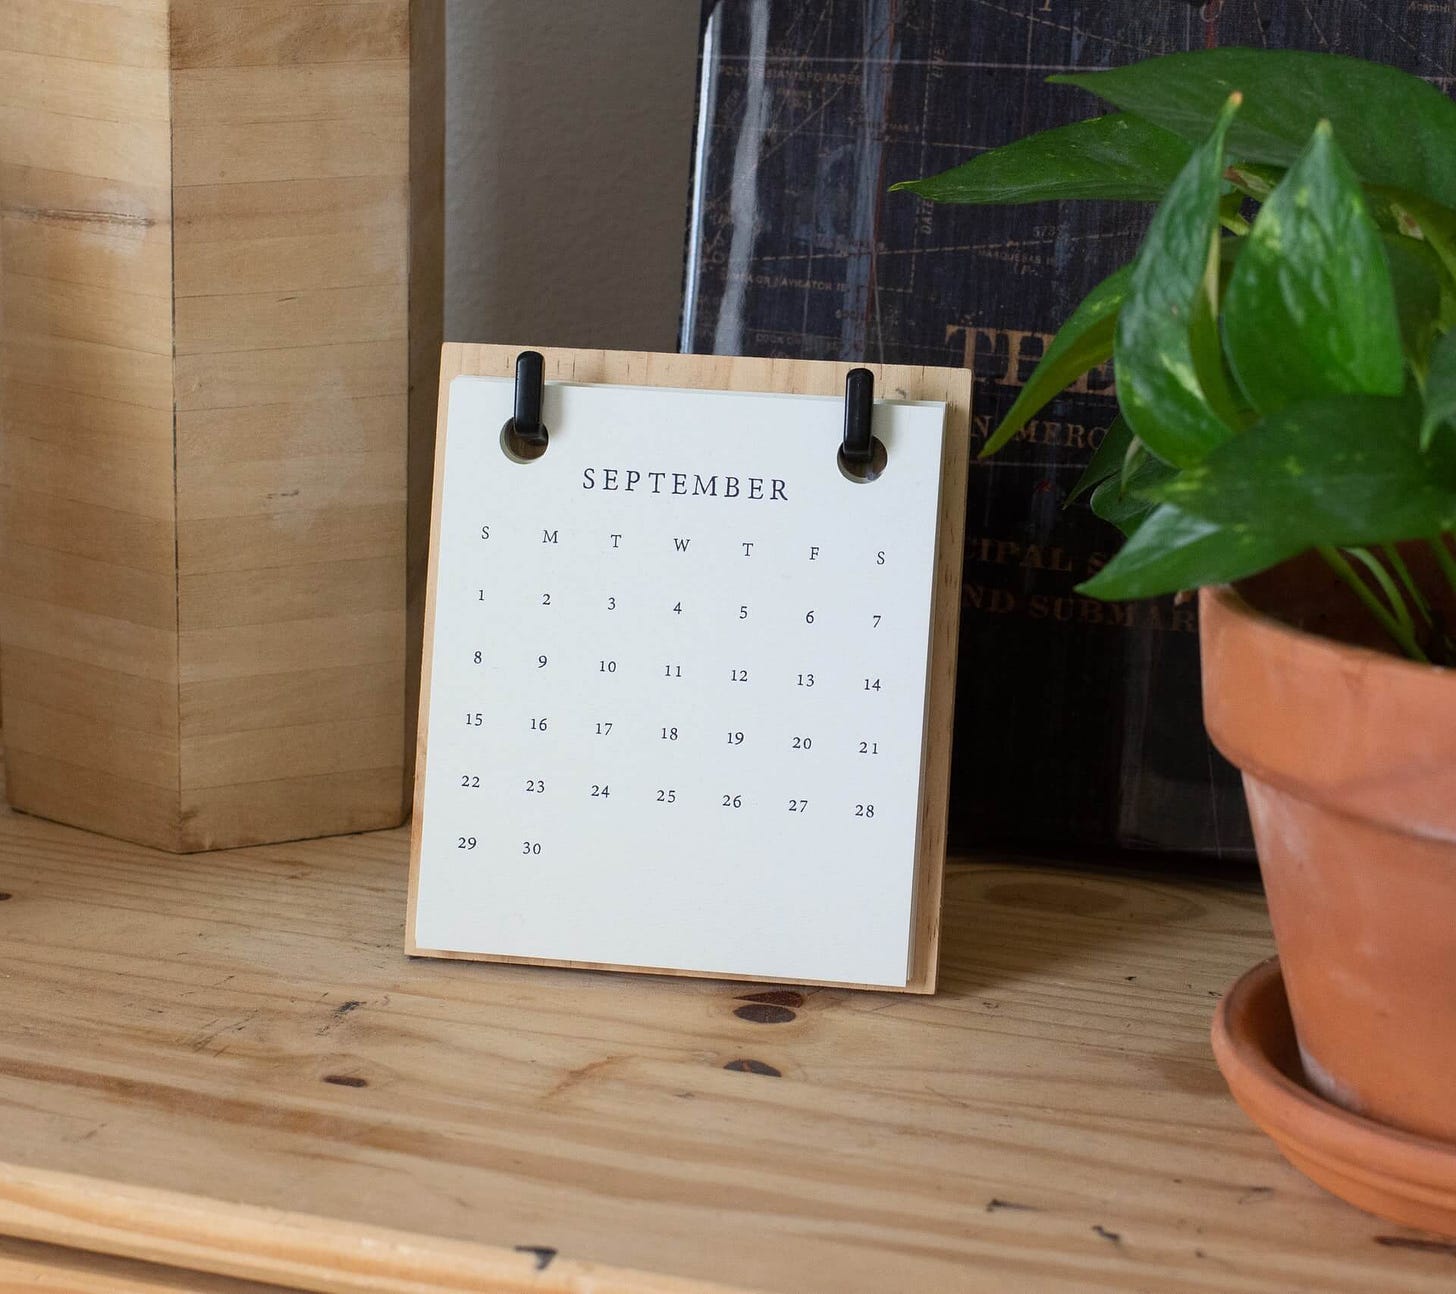 Calendário do mês de setembro sobre mesa de madeira clara, com planta de vaso no lado direito